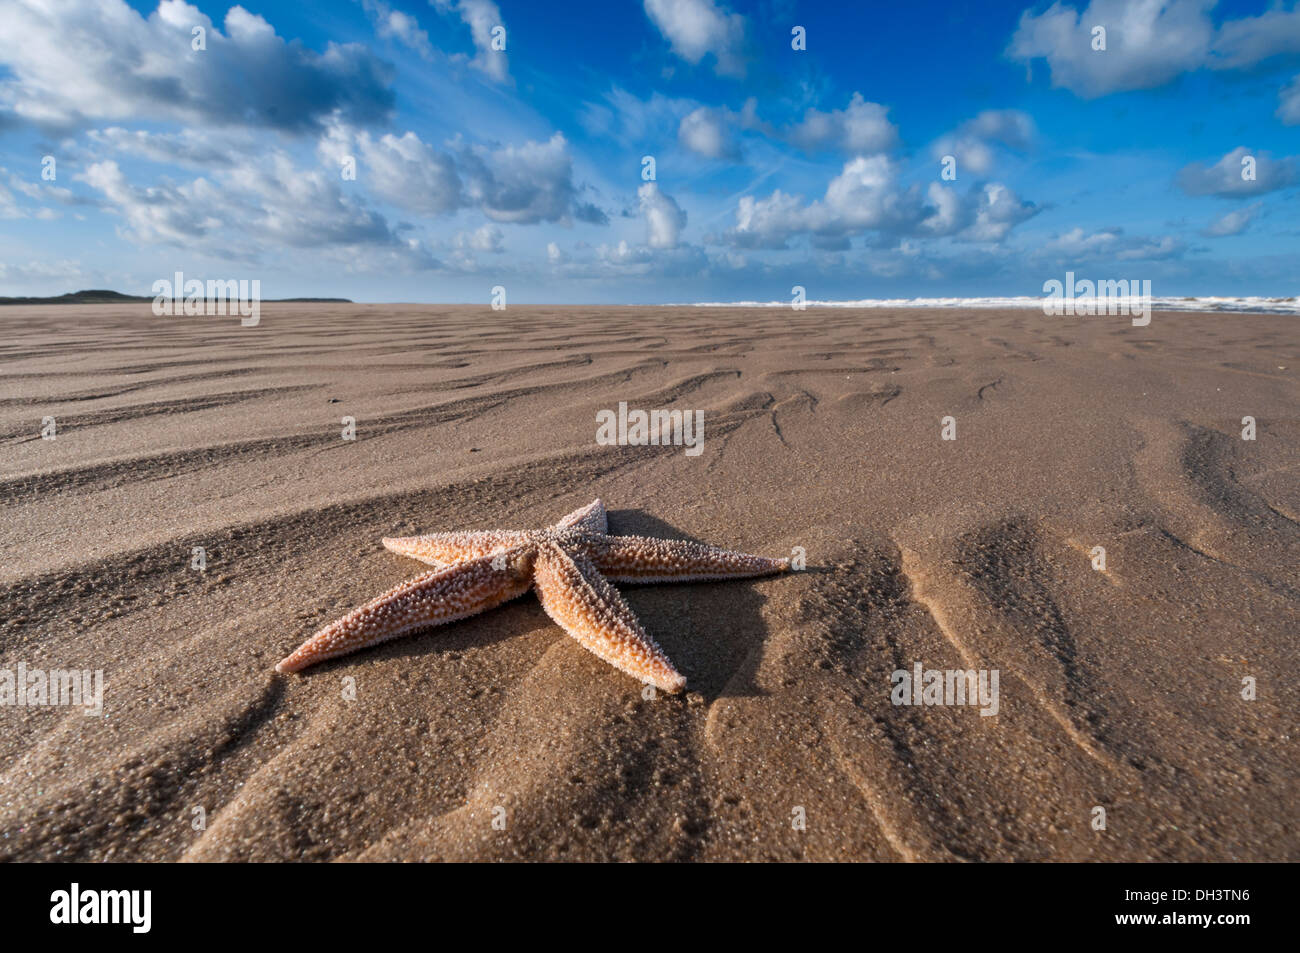 Starfish on the beach. Stock Photo